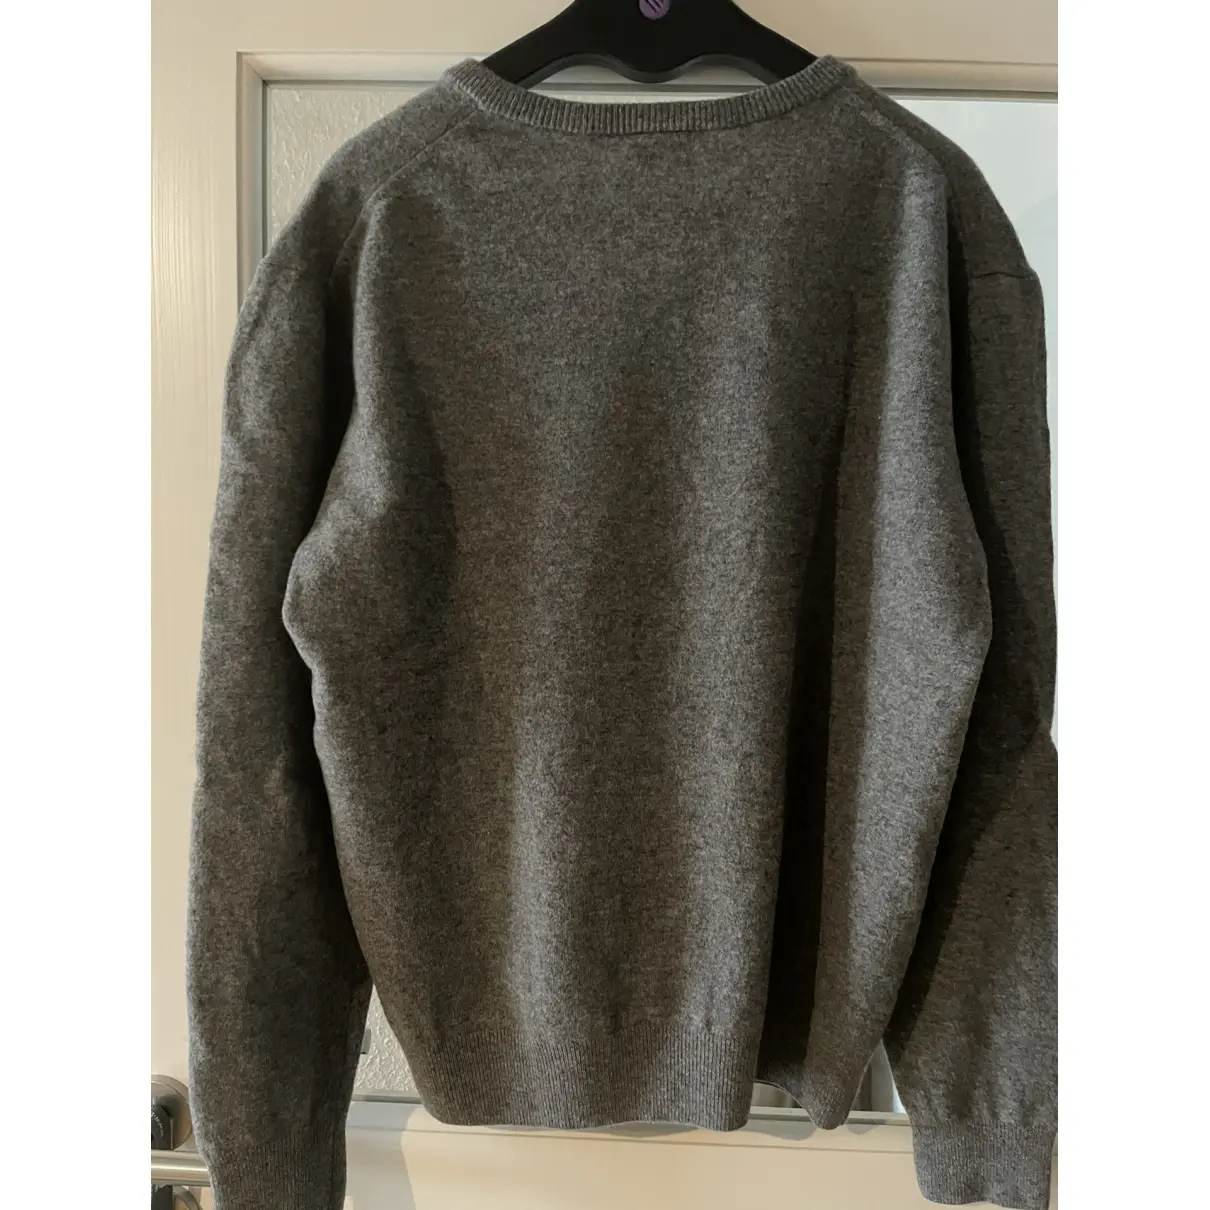 Buy Lacoste Wool pull online